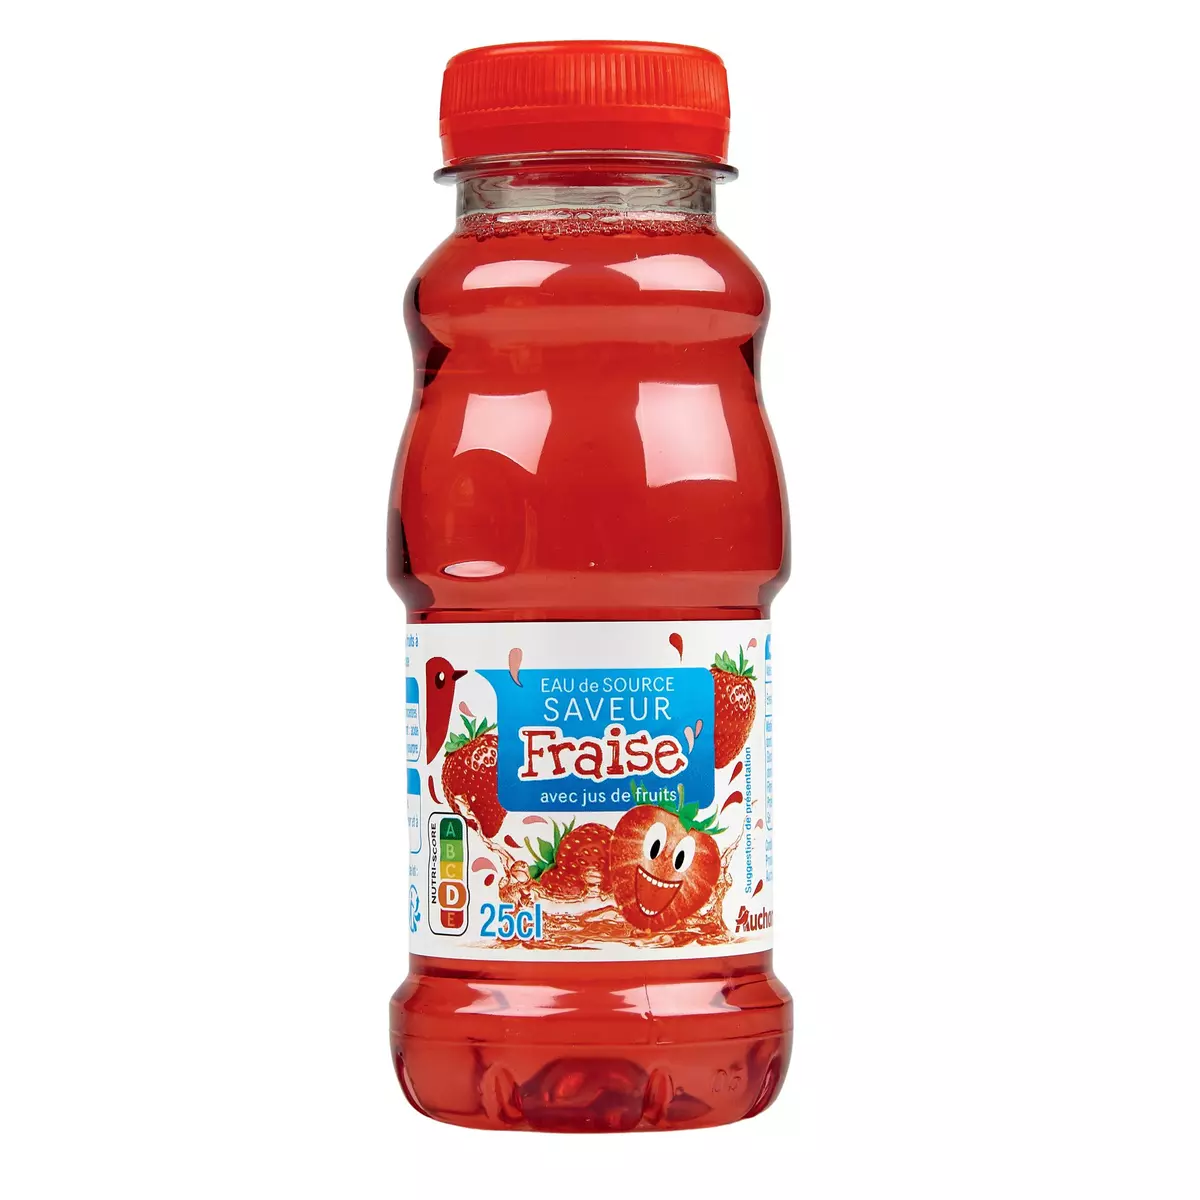 AUCHAN Eau de source saveur fraise avec jus de fruits 25cl